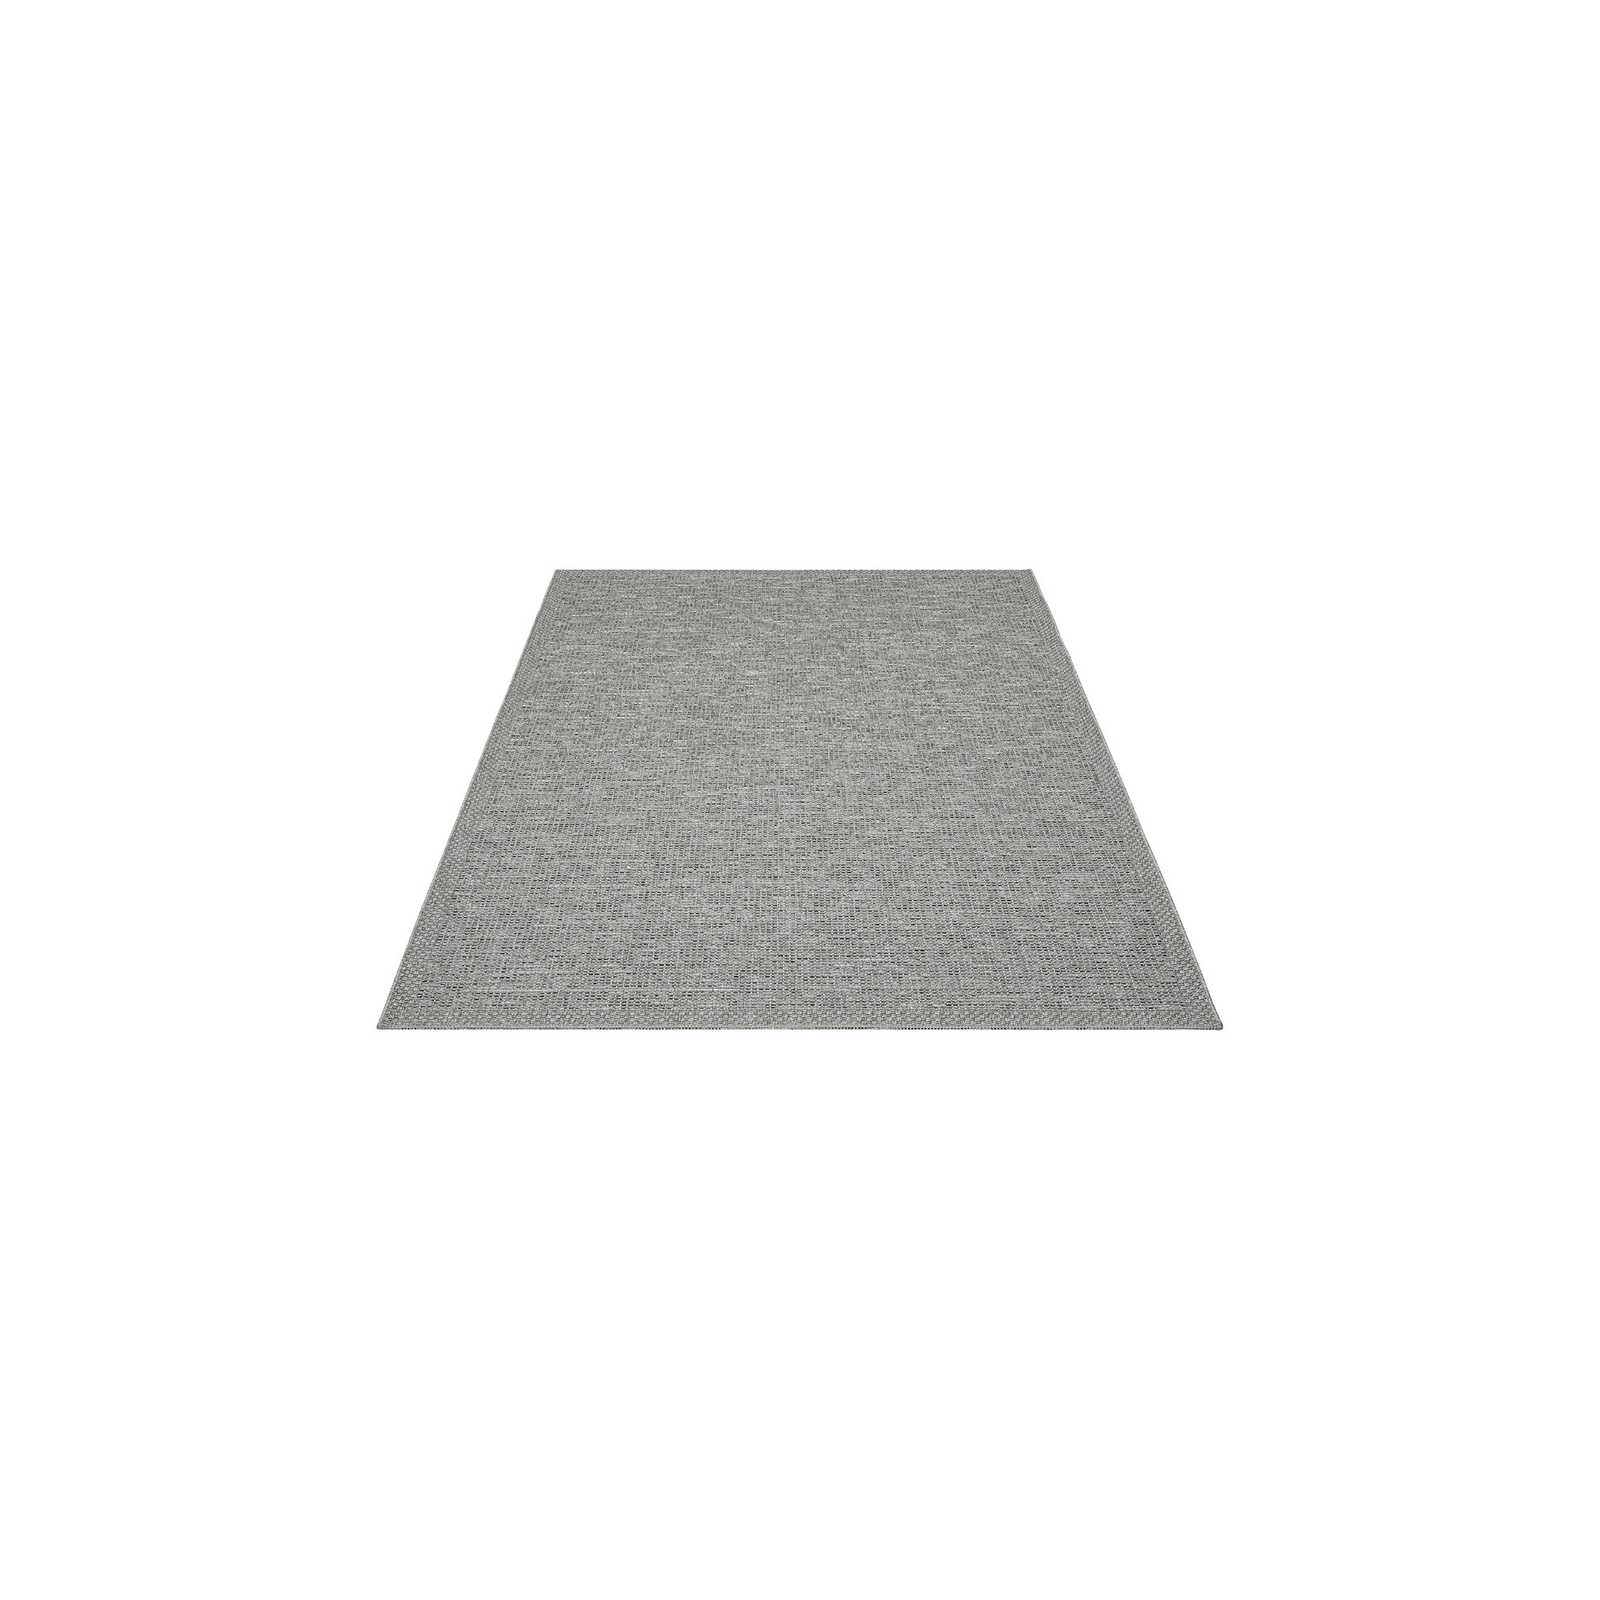 Schlichter Outdoor Teppich in Grau – 160 x 120 cm
